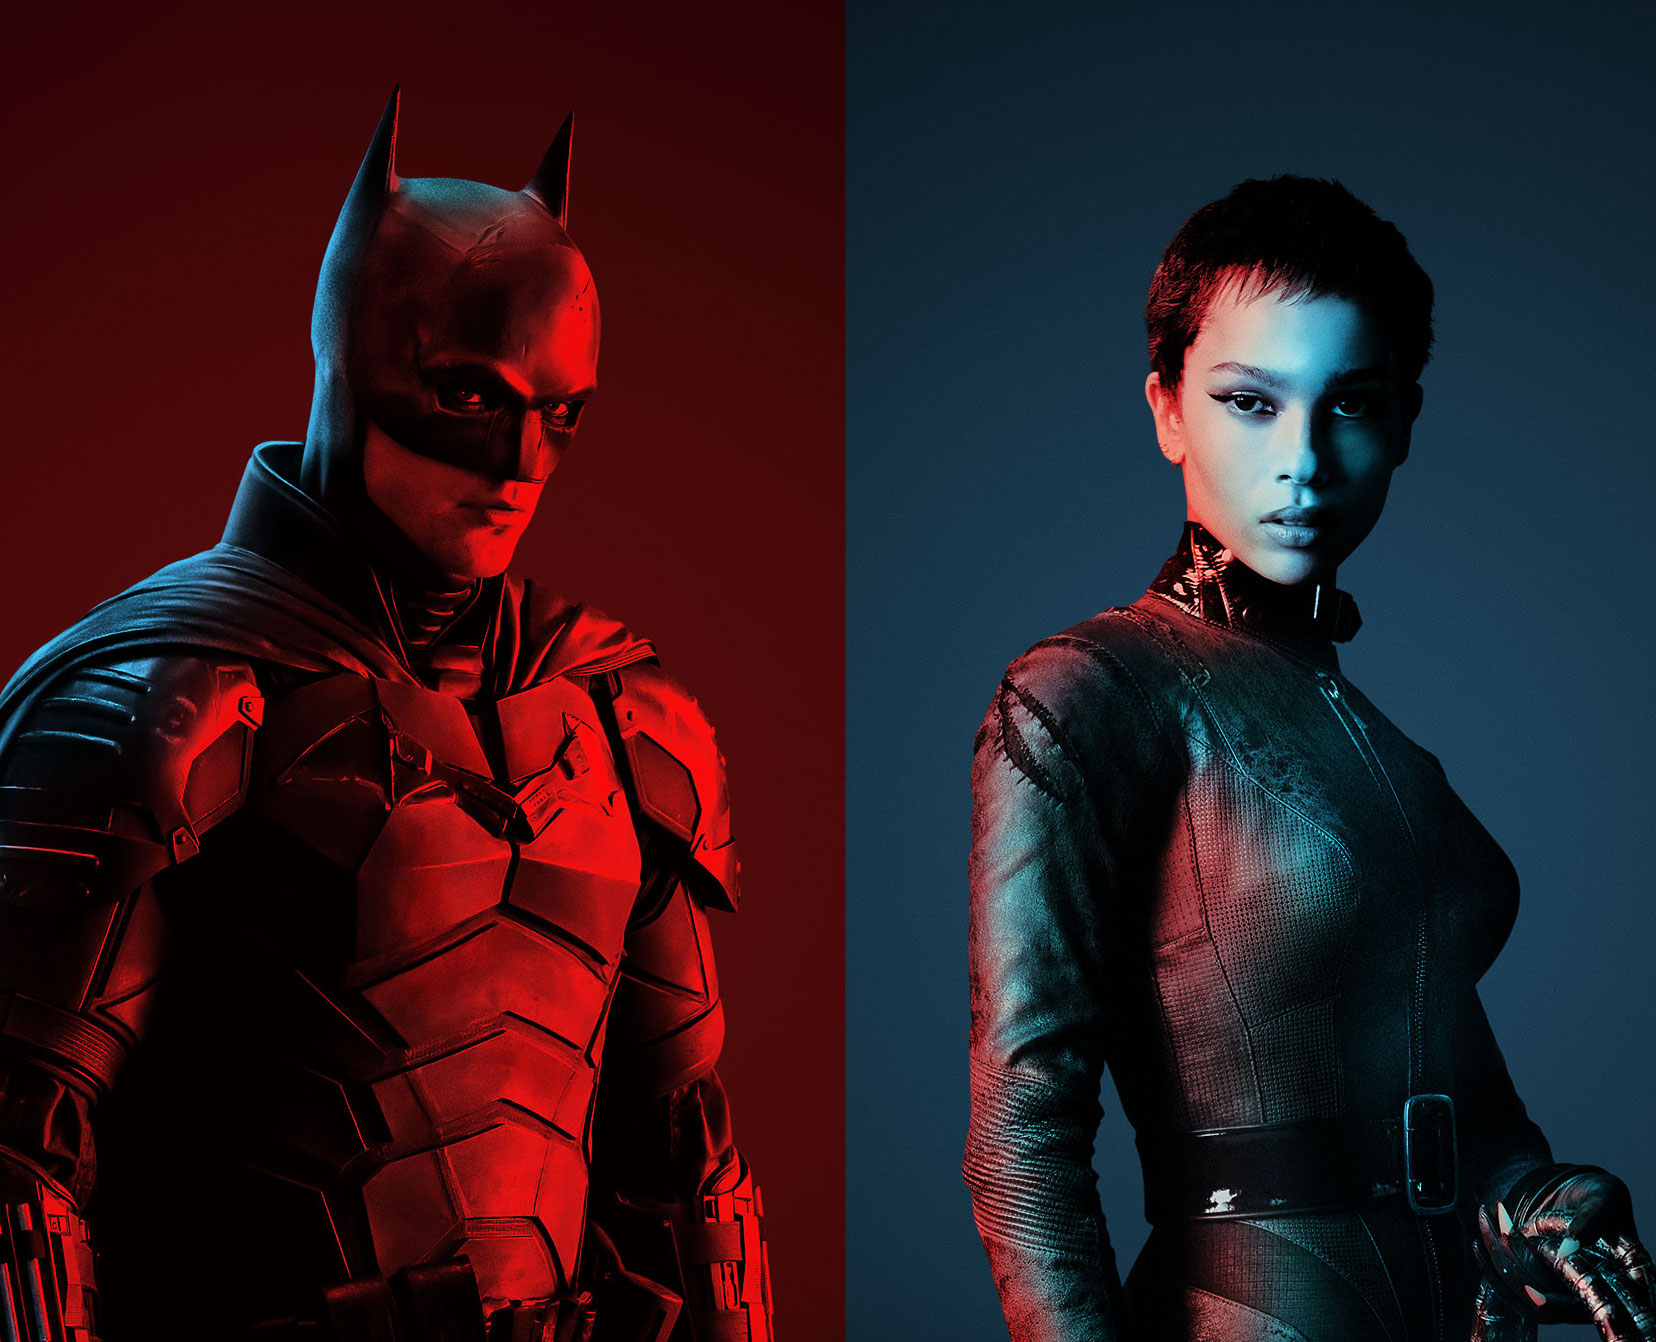 Warner Bros. promotes comics shops in new 'The Batman' trailer credits